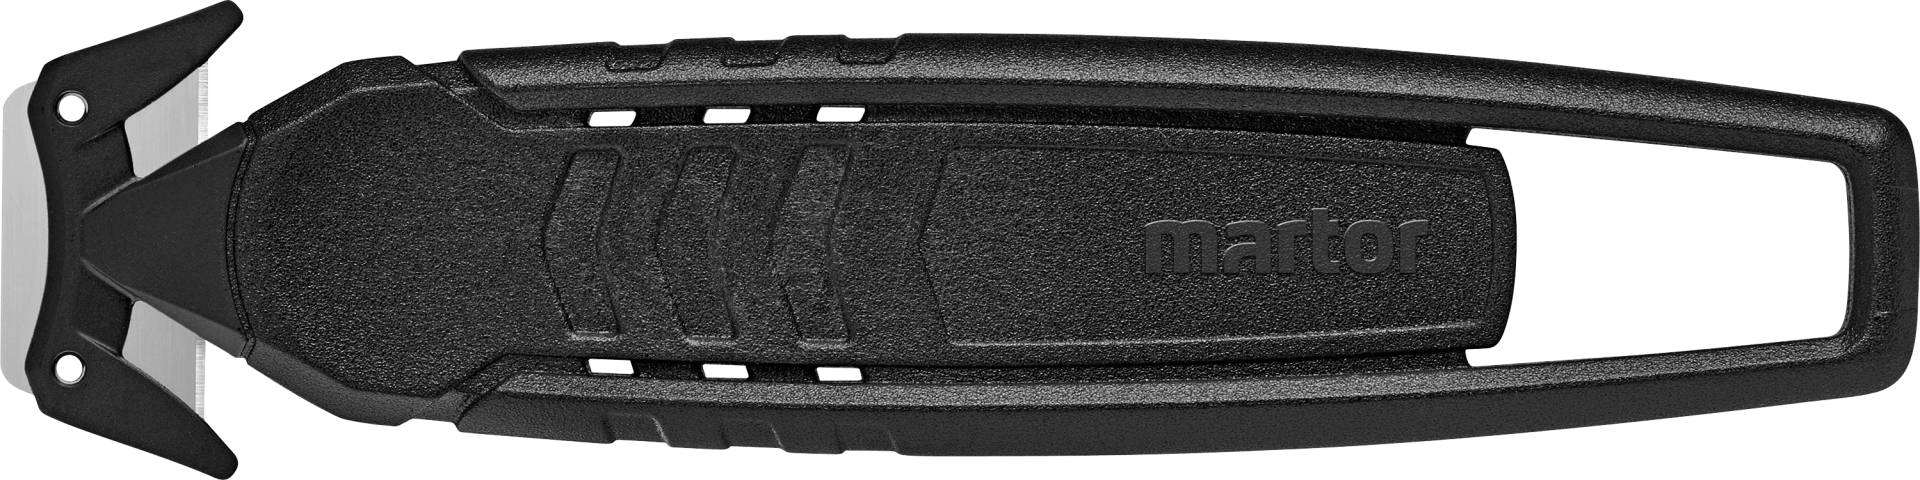 MARTOR SM 150 - Cuttermesser SECUMAX 150, Einwegmesser, 10er-Pack von Martor